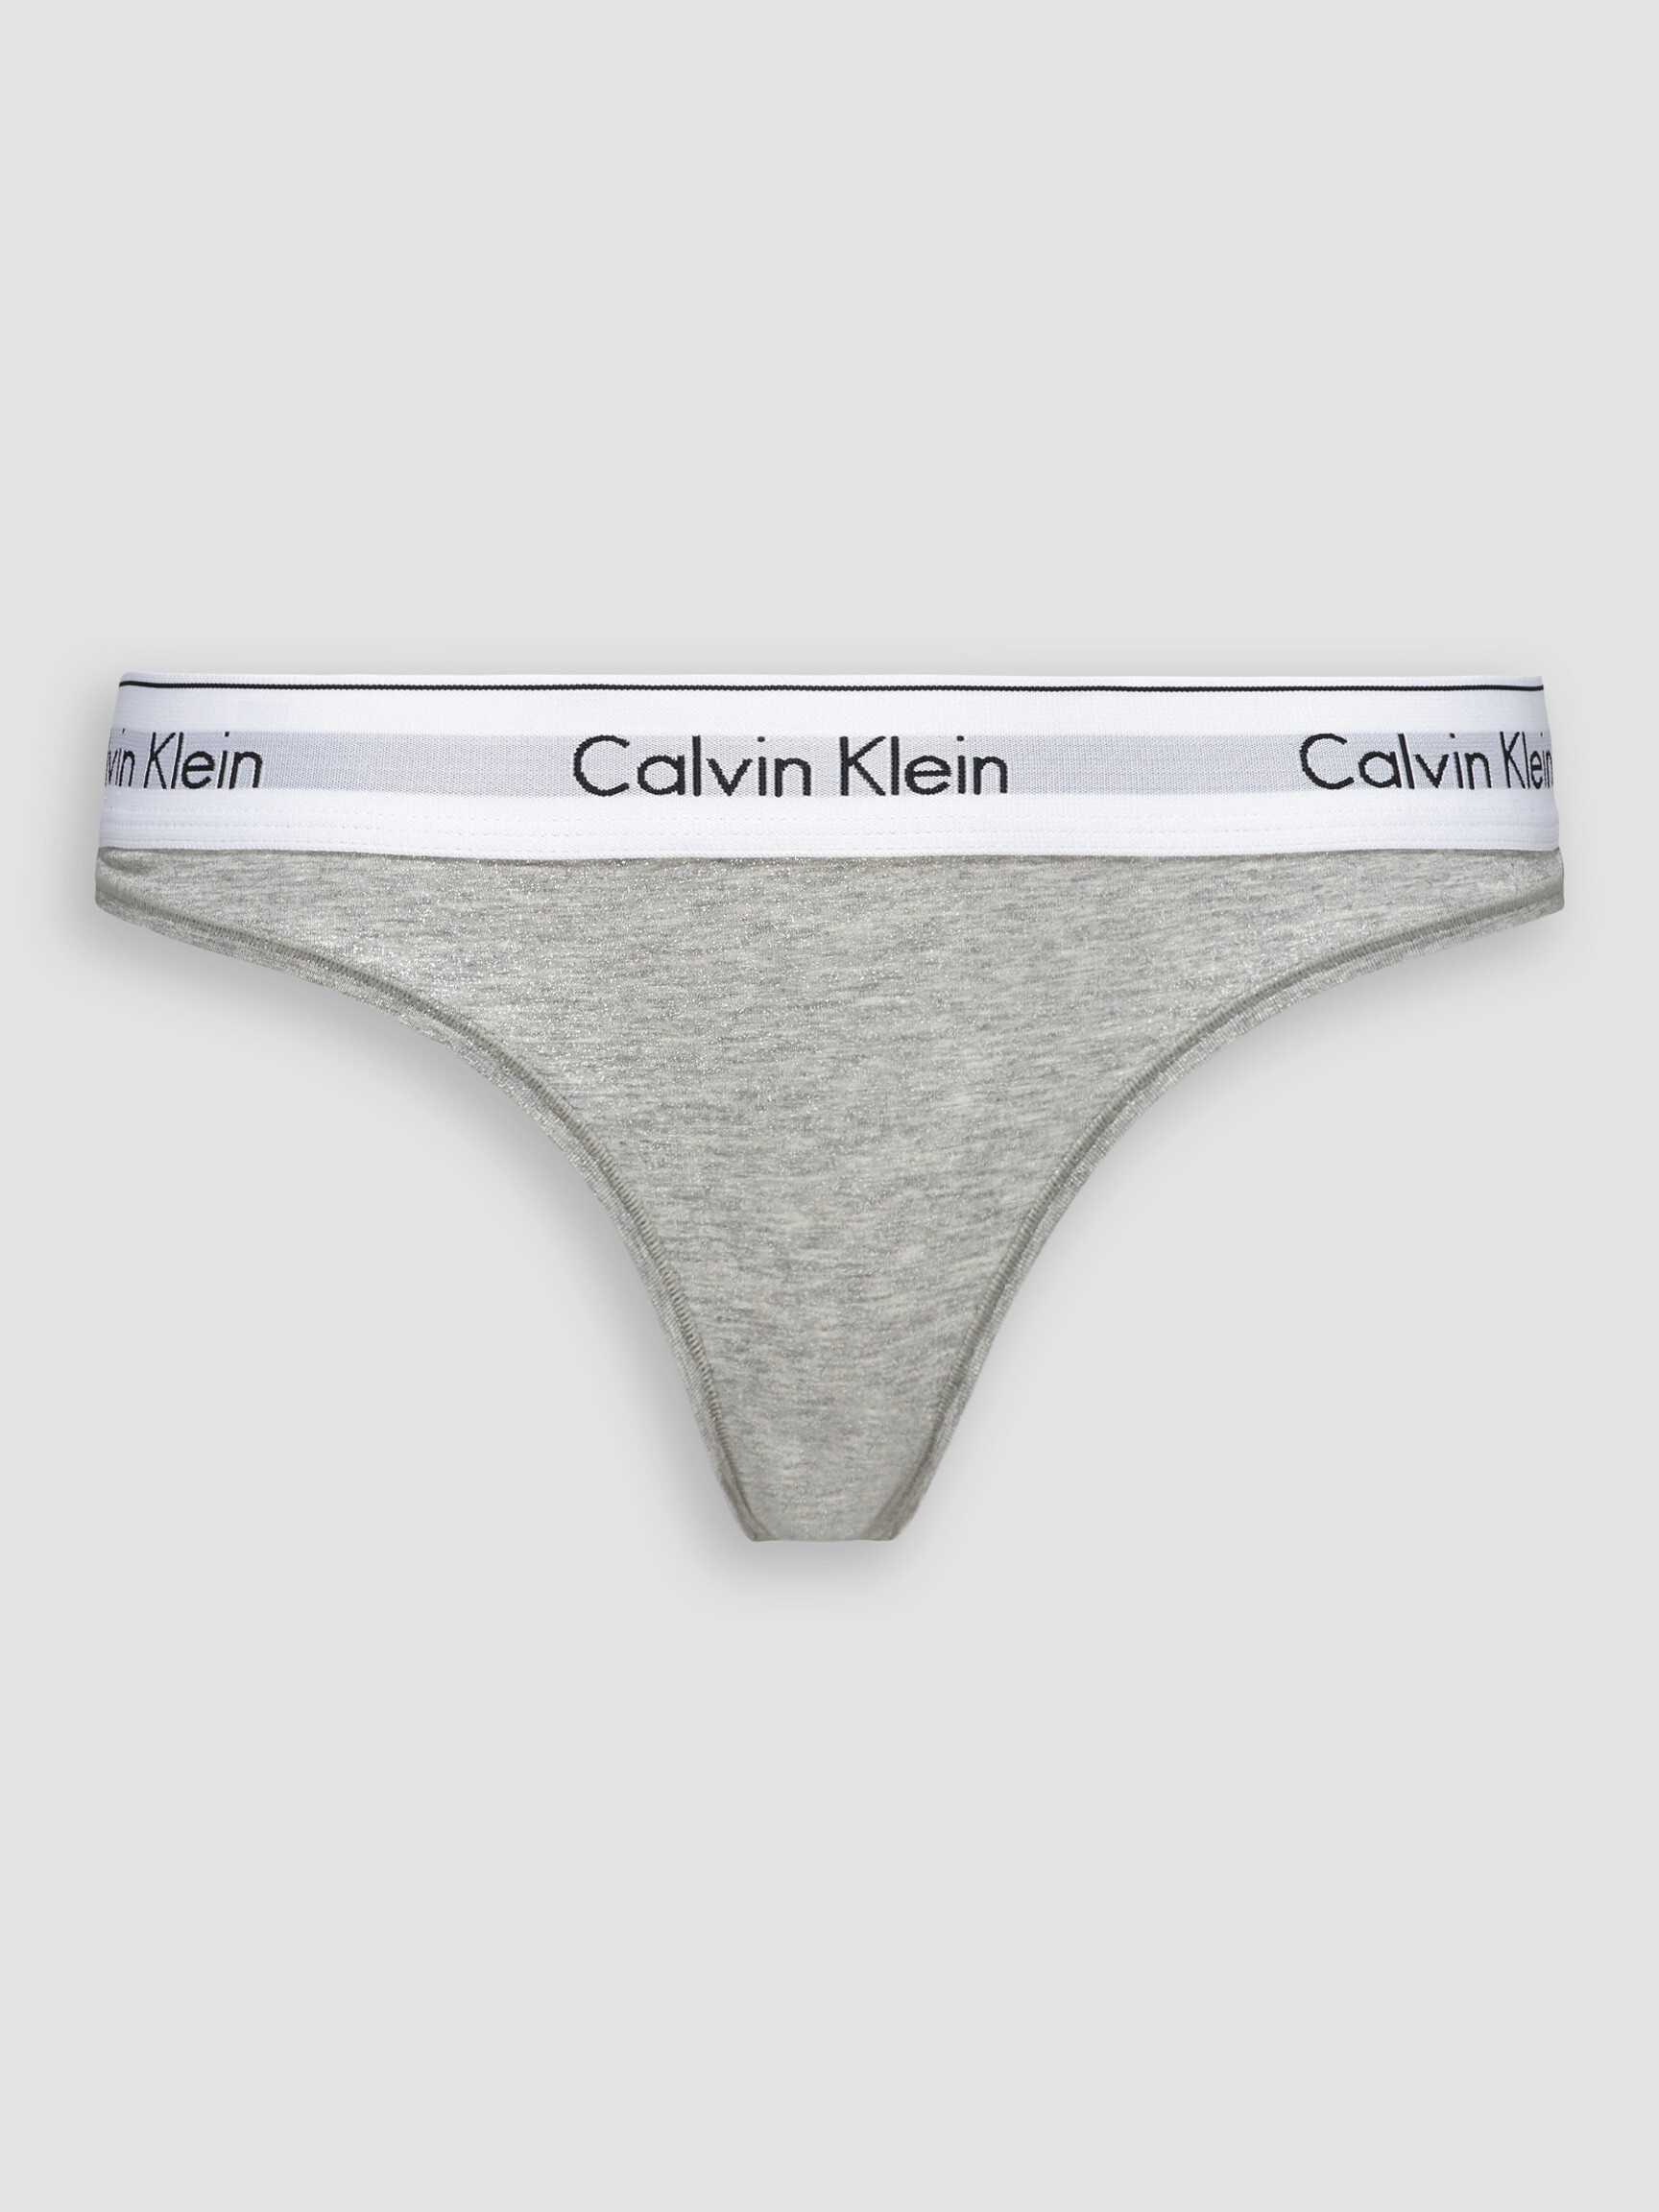 Calvin Klein Onderbroek - Maat M - Vrouwen - zwart/wit